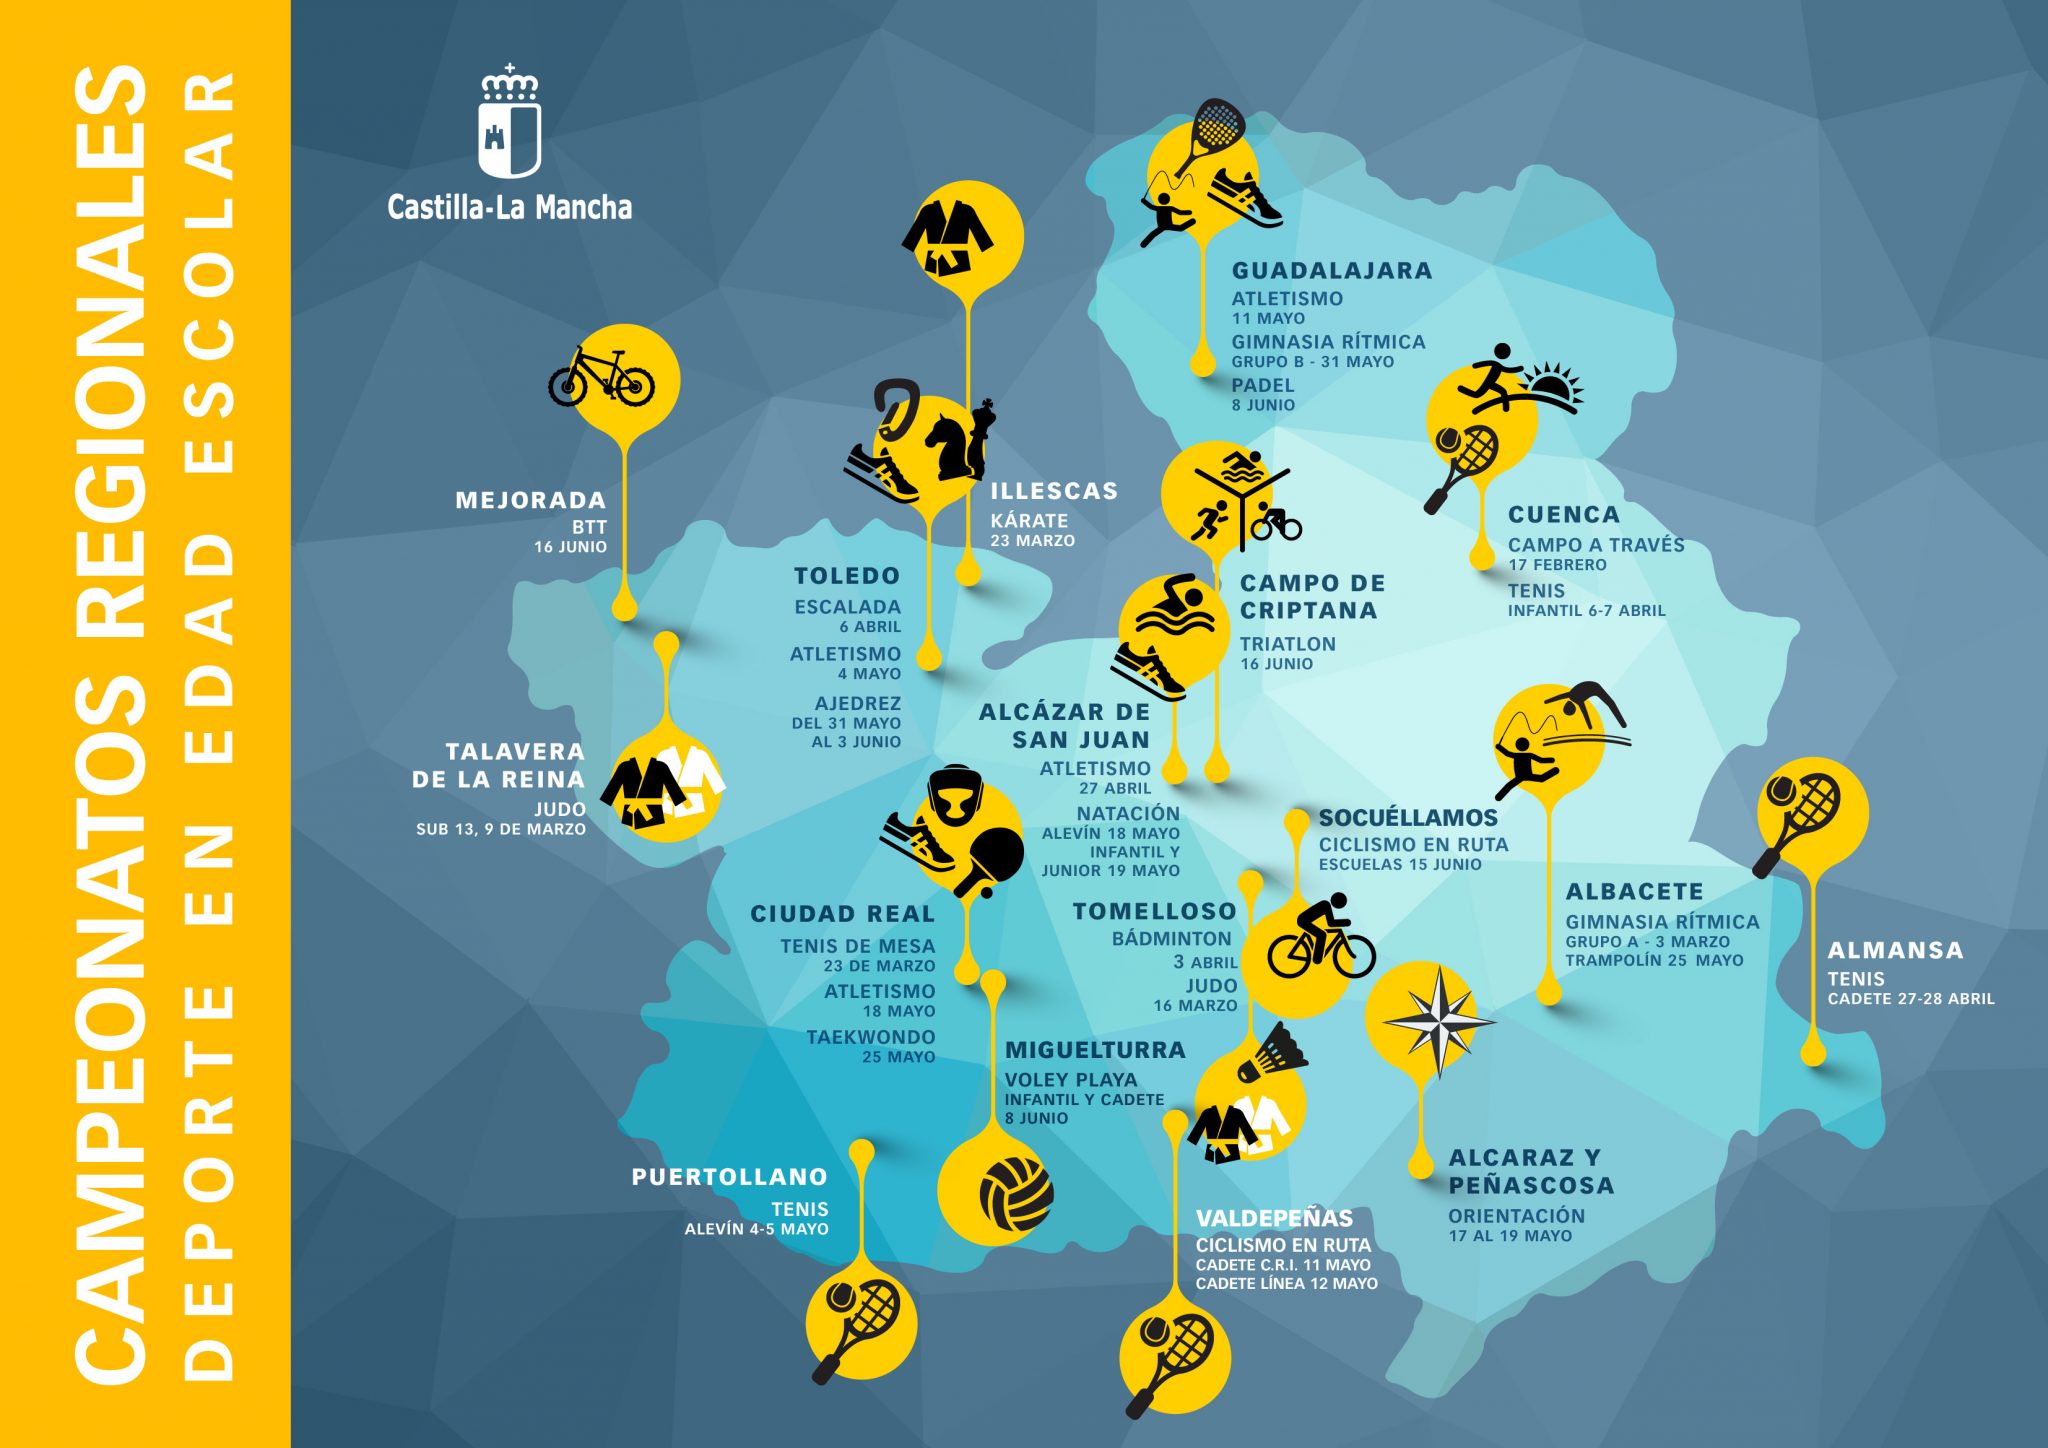 mapa crdee 2019 0 | Liberal de Castilla